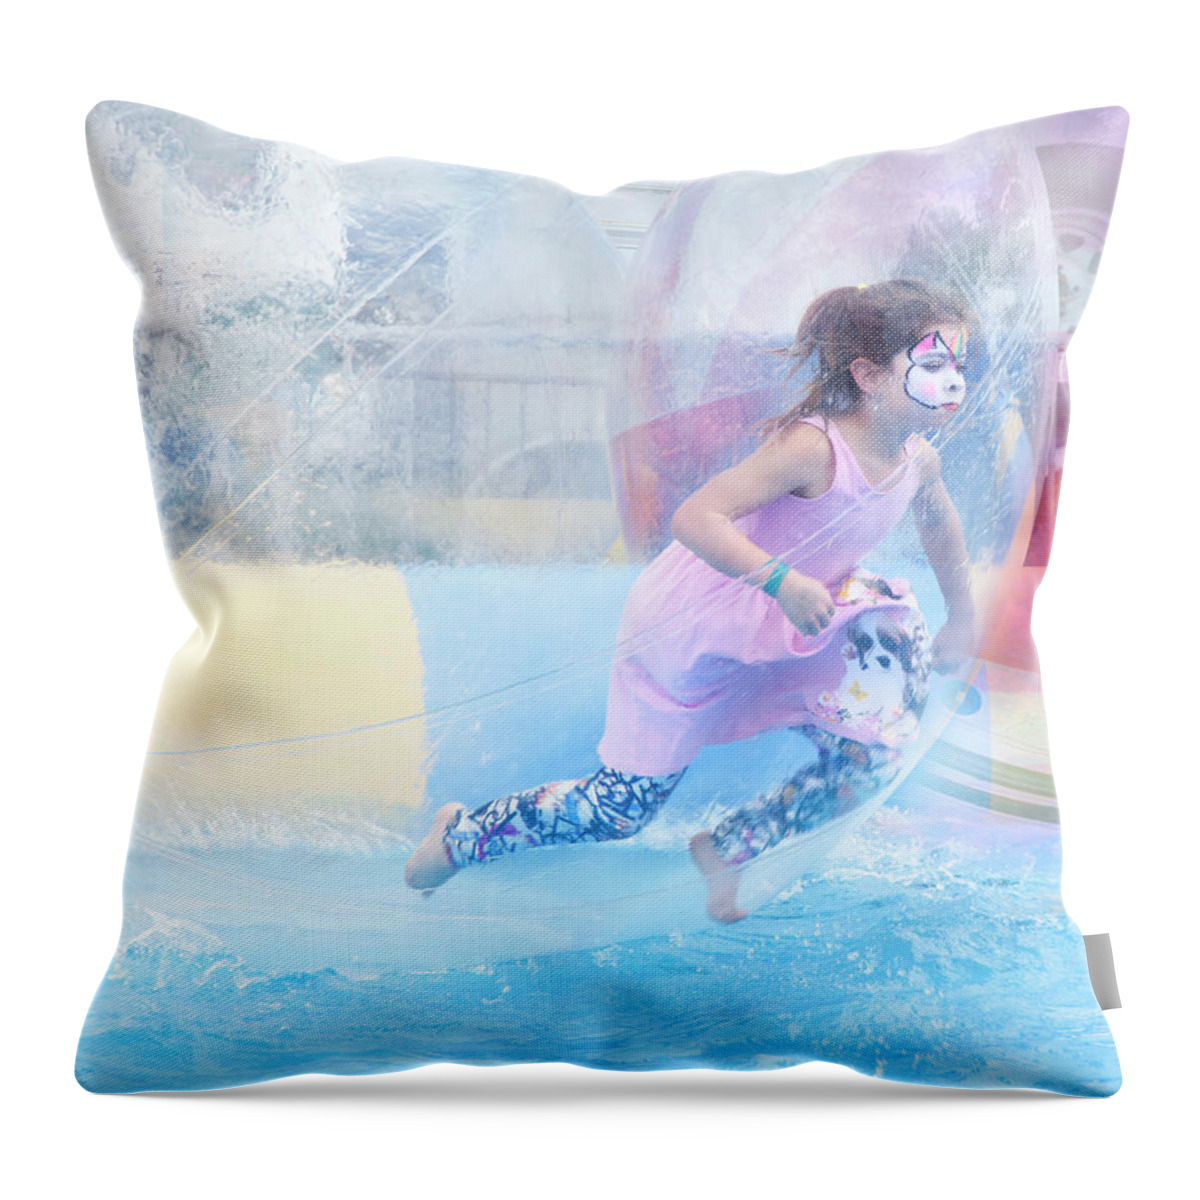 Theresa Tahara Throw Pillow featuring the photograph Summer Fun by Theresa Tahara